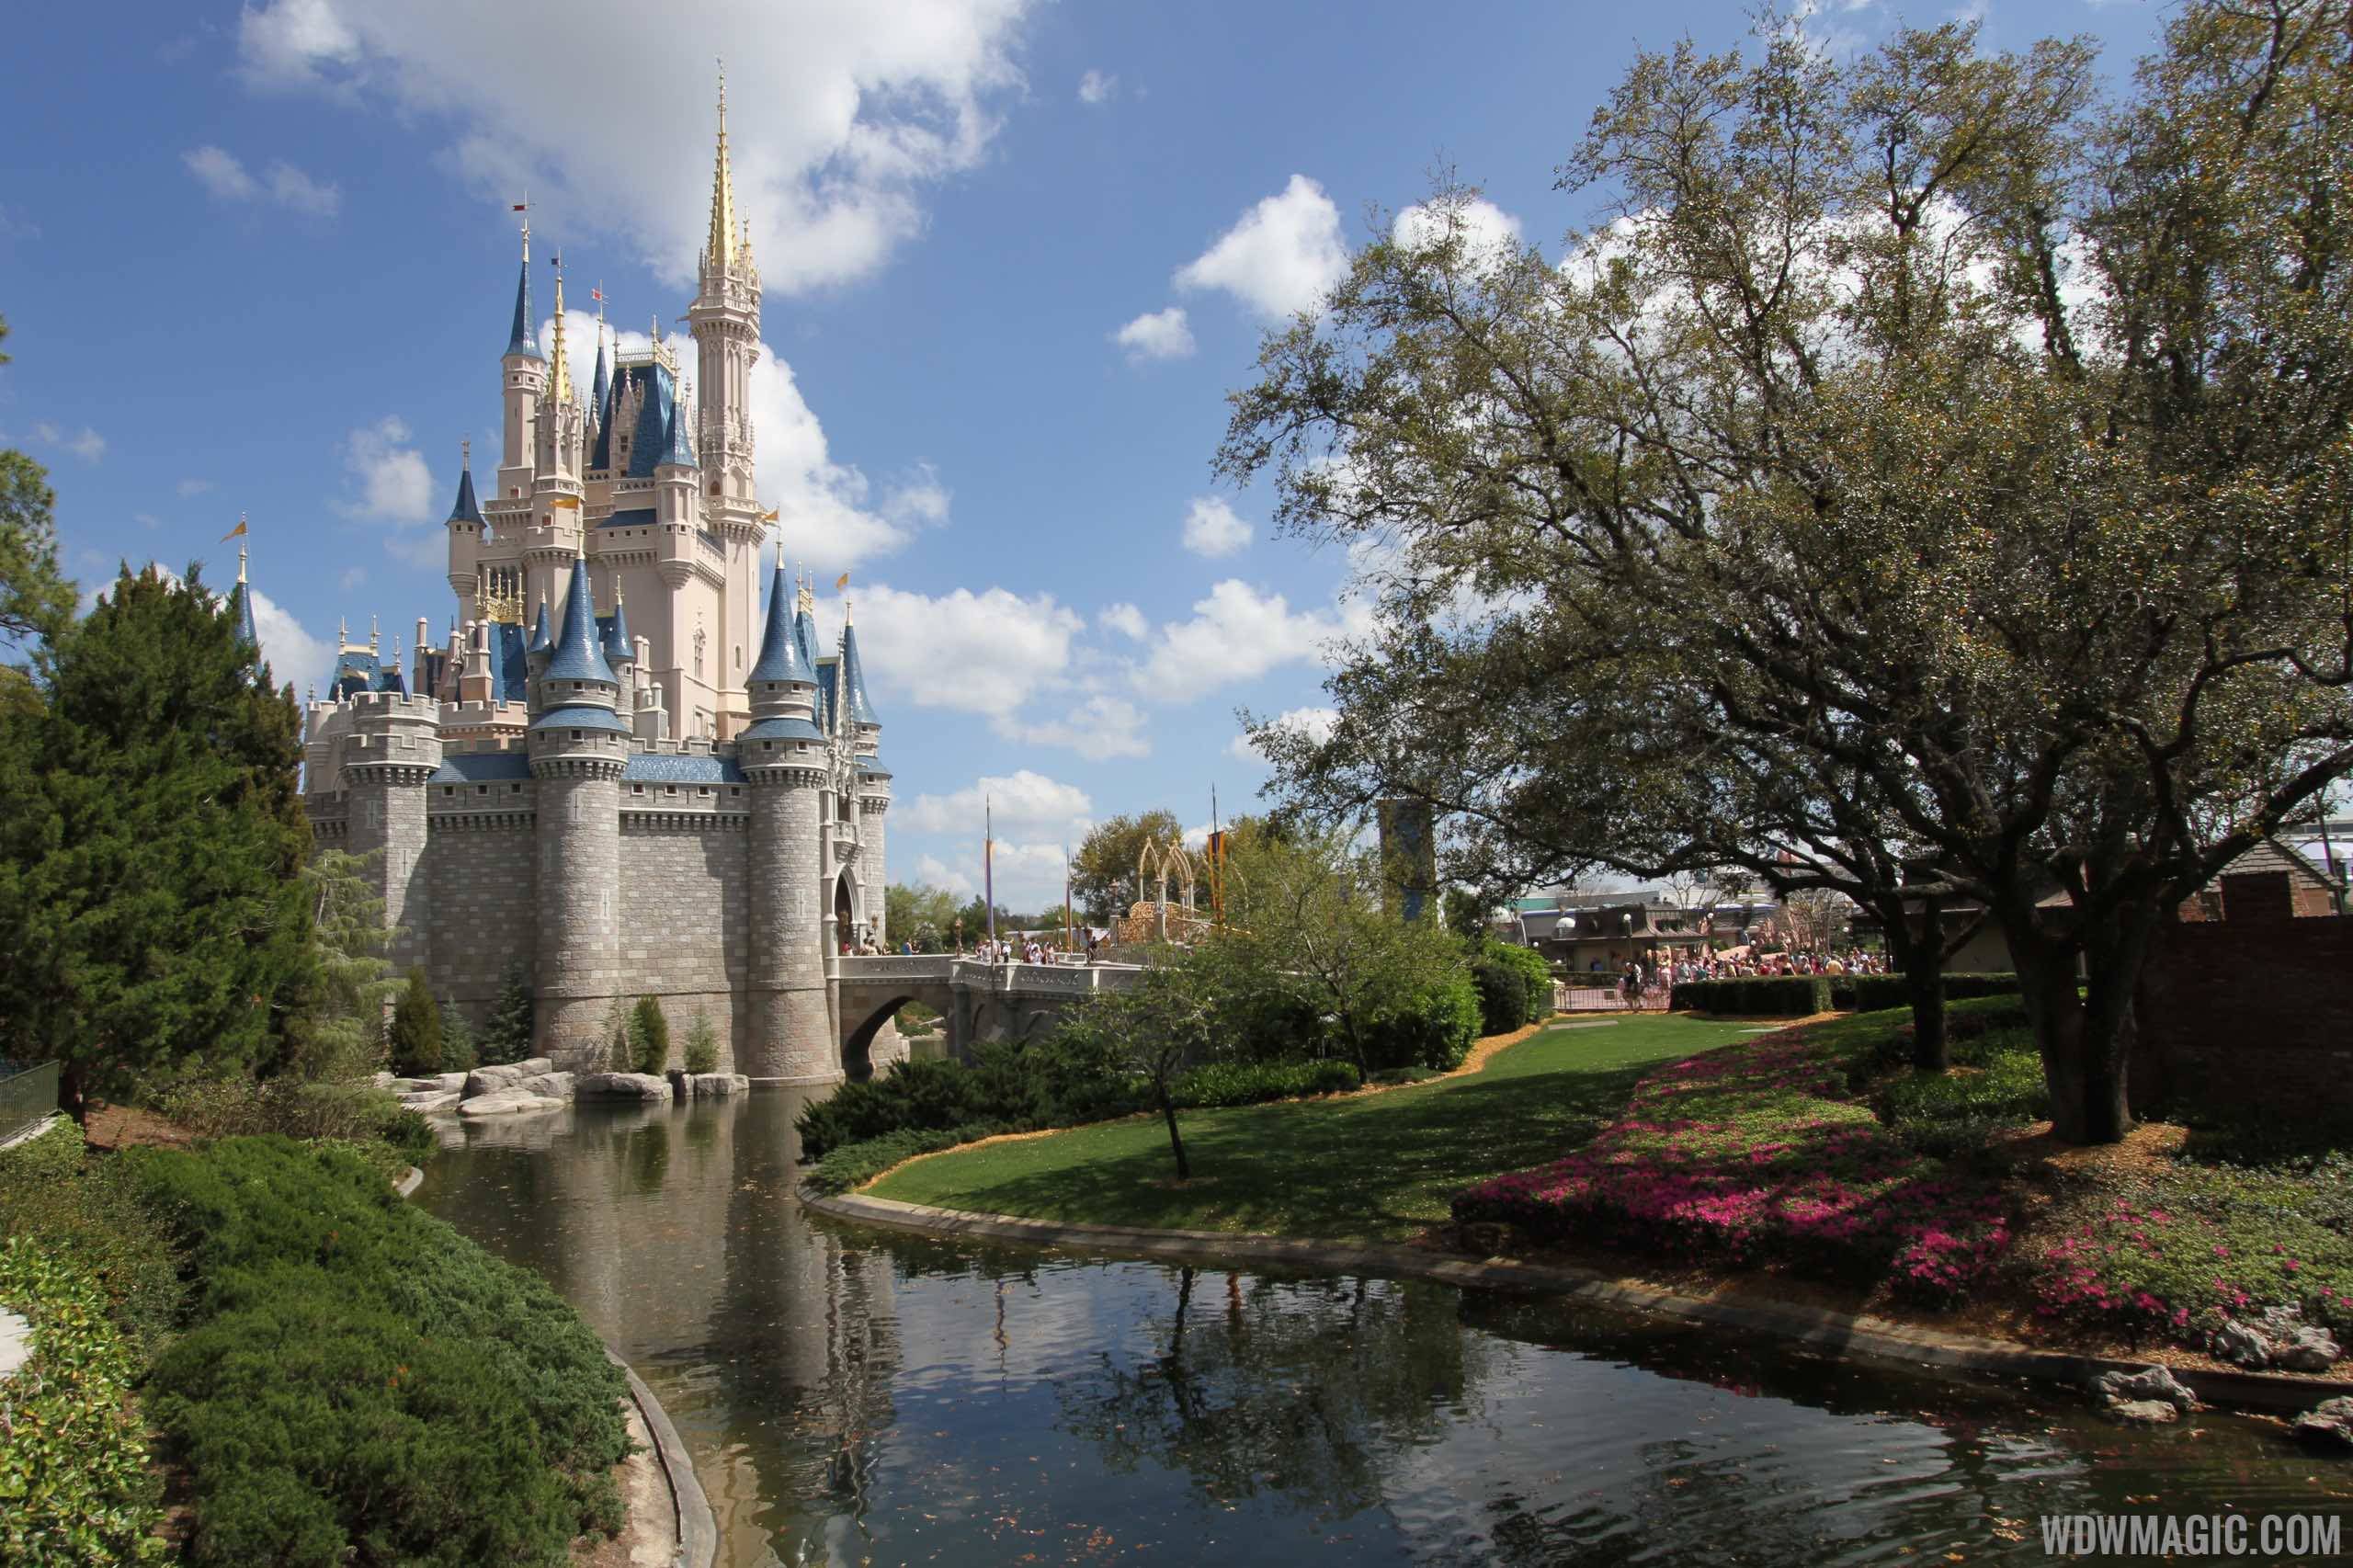 Magic Kingdom is valued at $437 million dollars